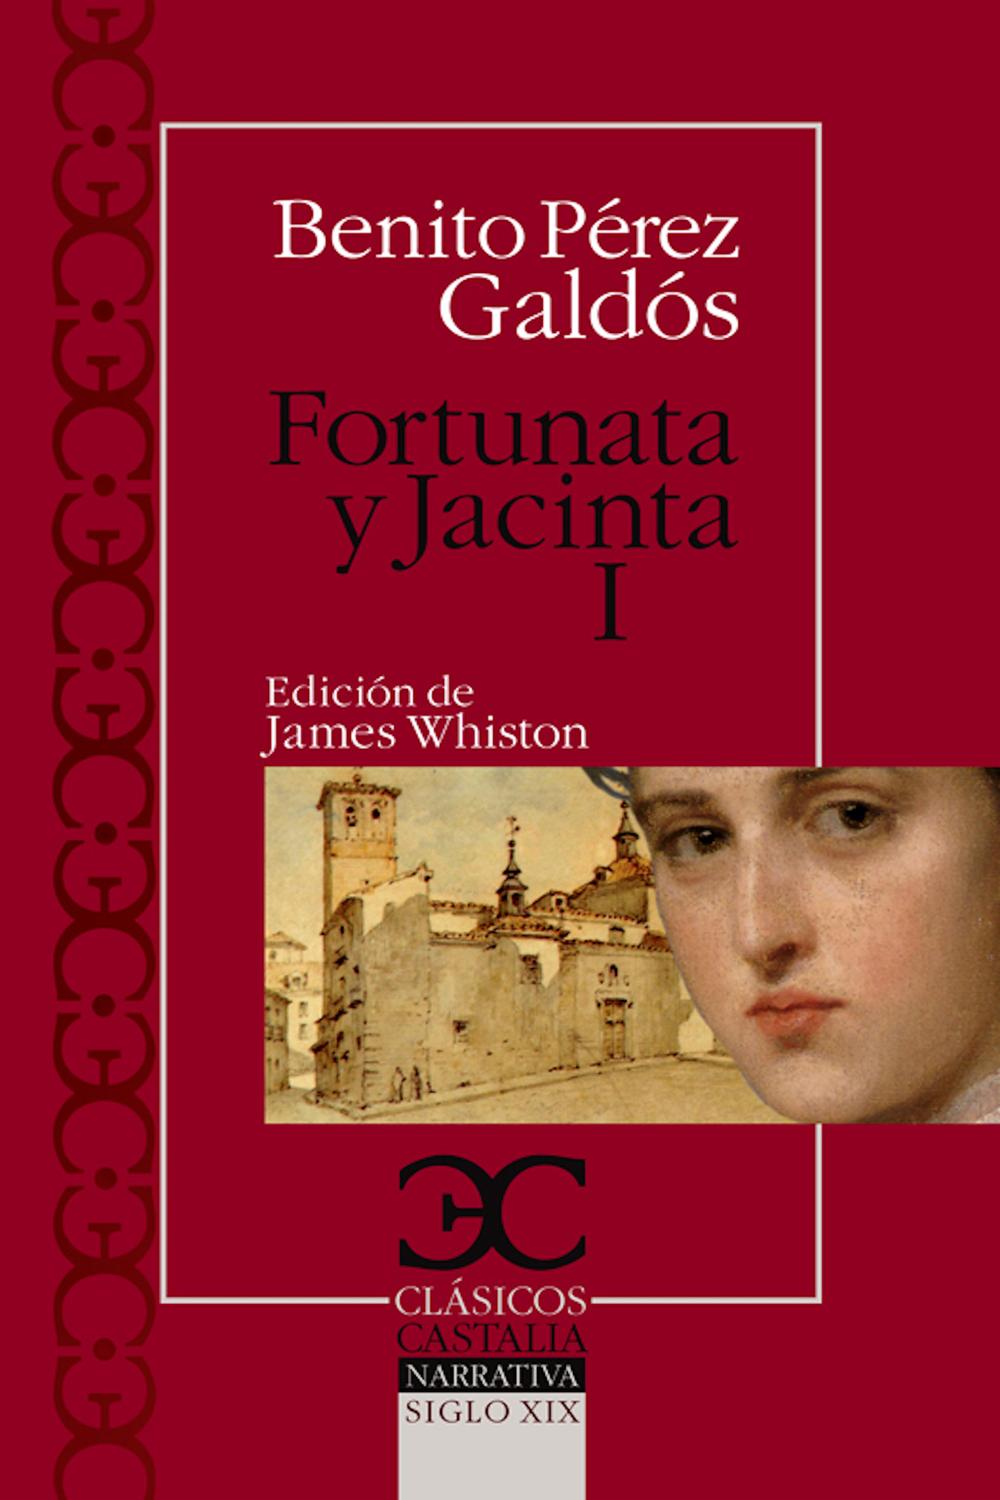 Fortunata y Jacinta I - Benito Pérez Galdós, James Whiston